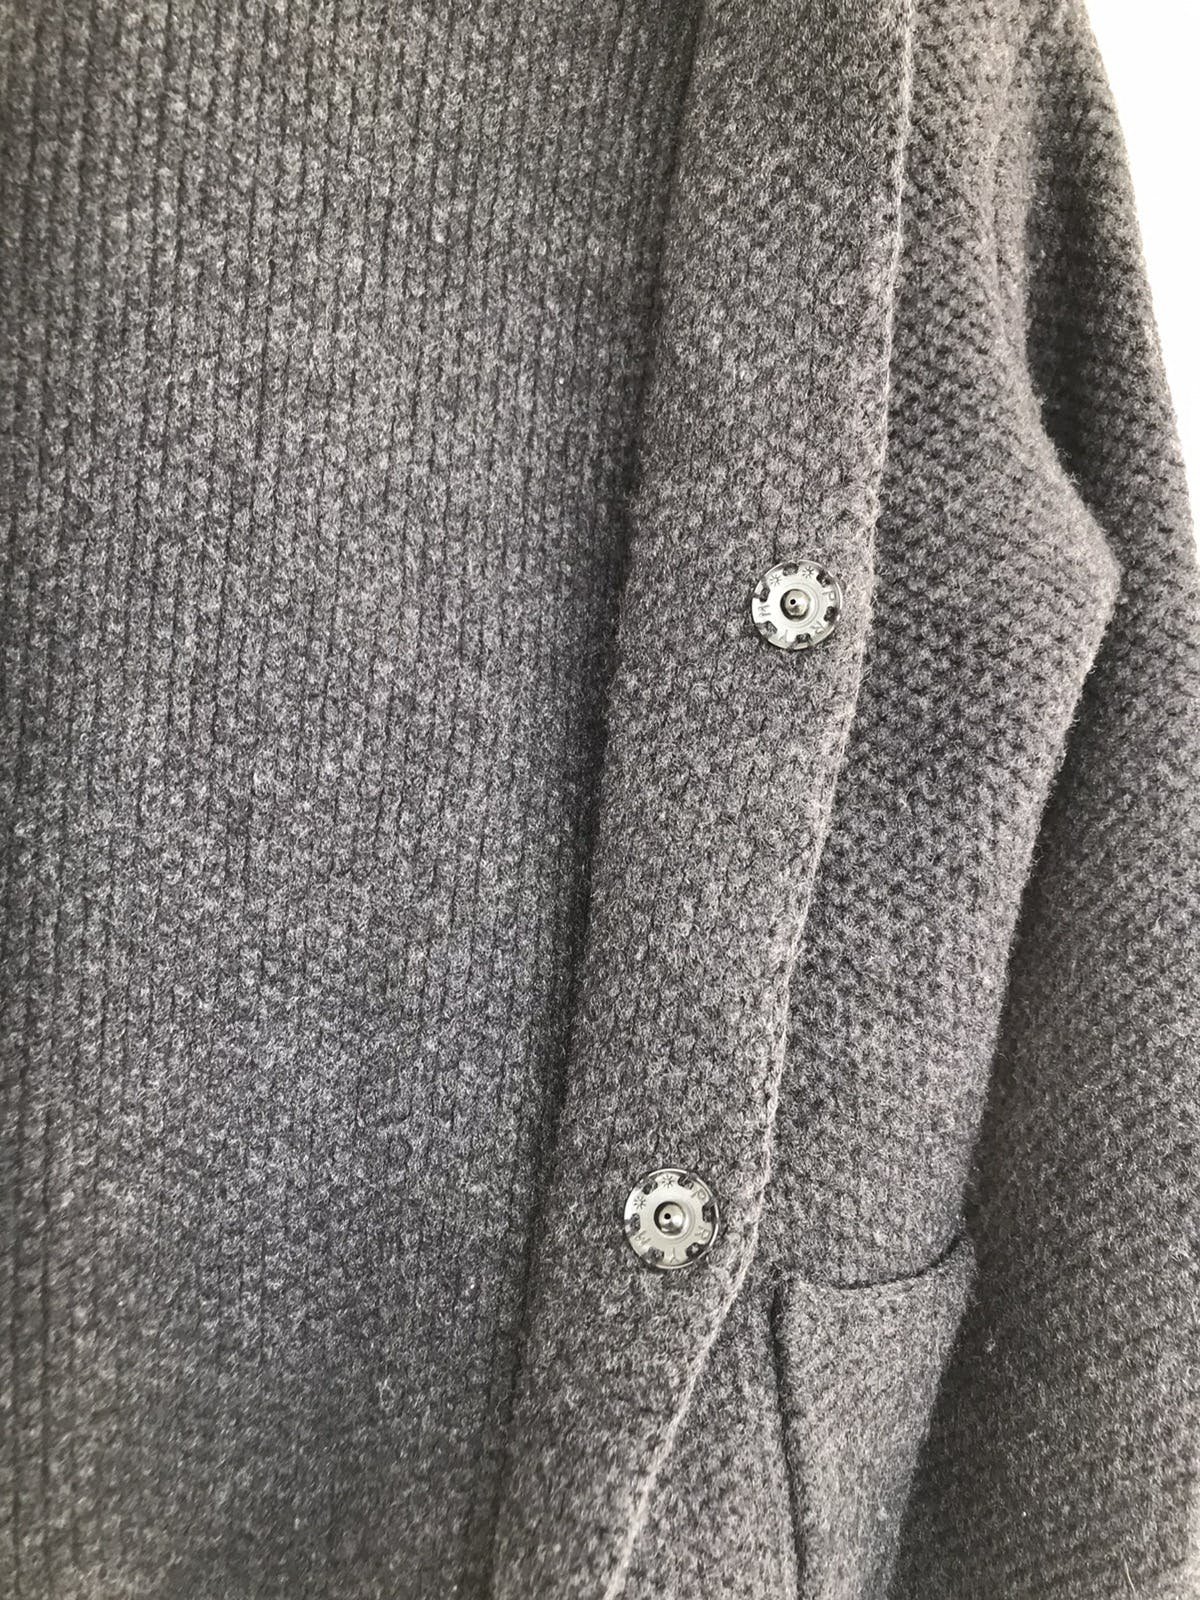 Vintage Nonnantive Wool Cardigans - 8